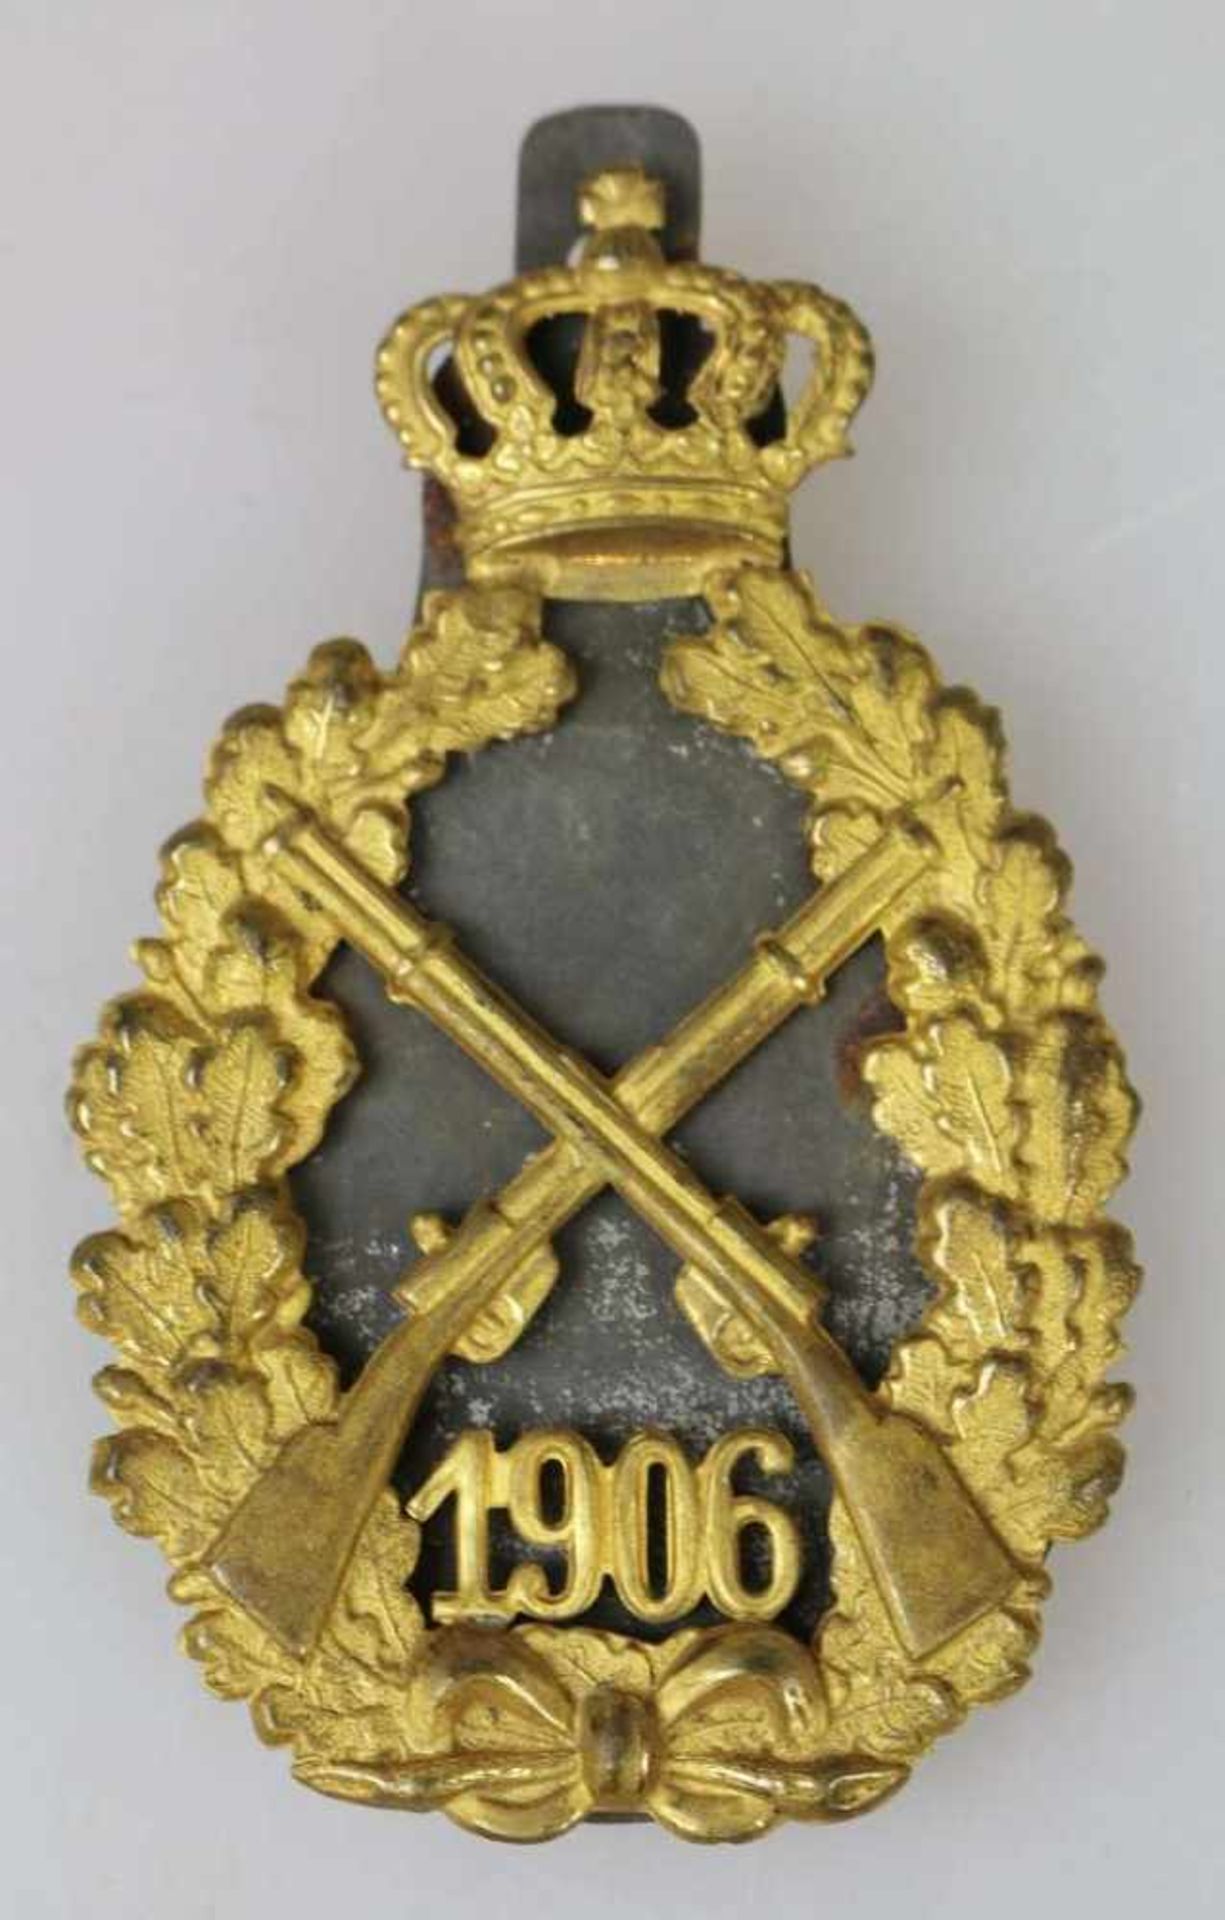 Königsabzeichen der Infanterie 1906. Schiesspreis, gestiftet am 27.Januar 1895 durch König und